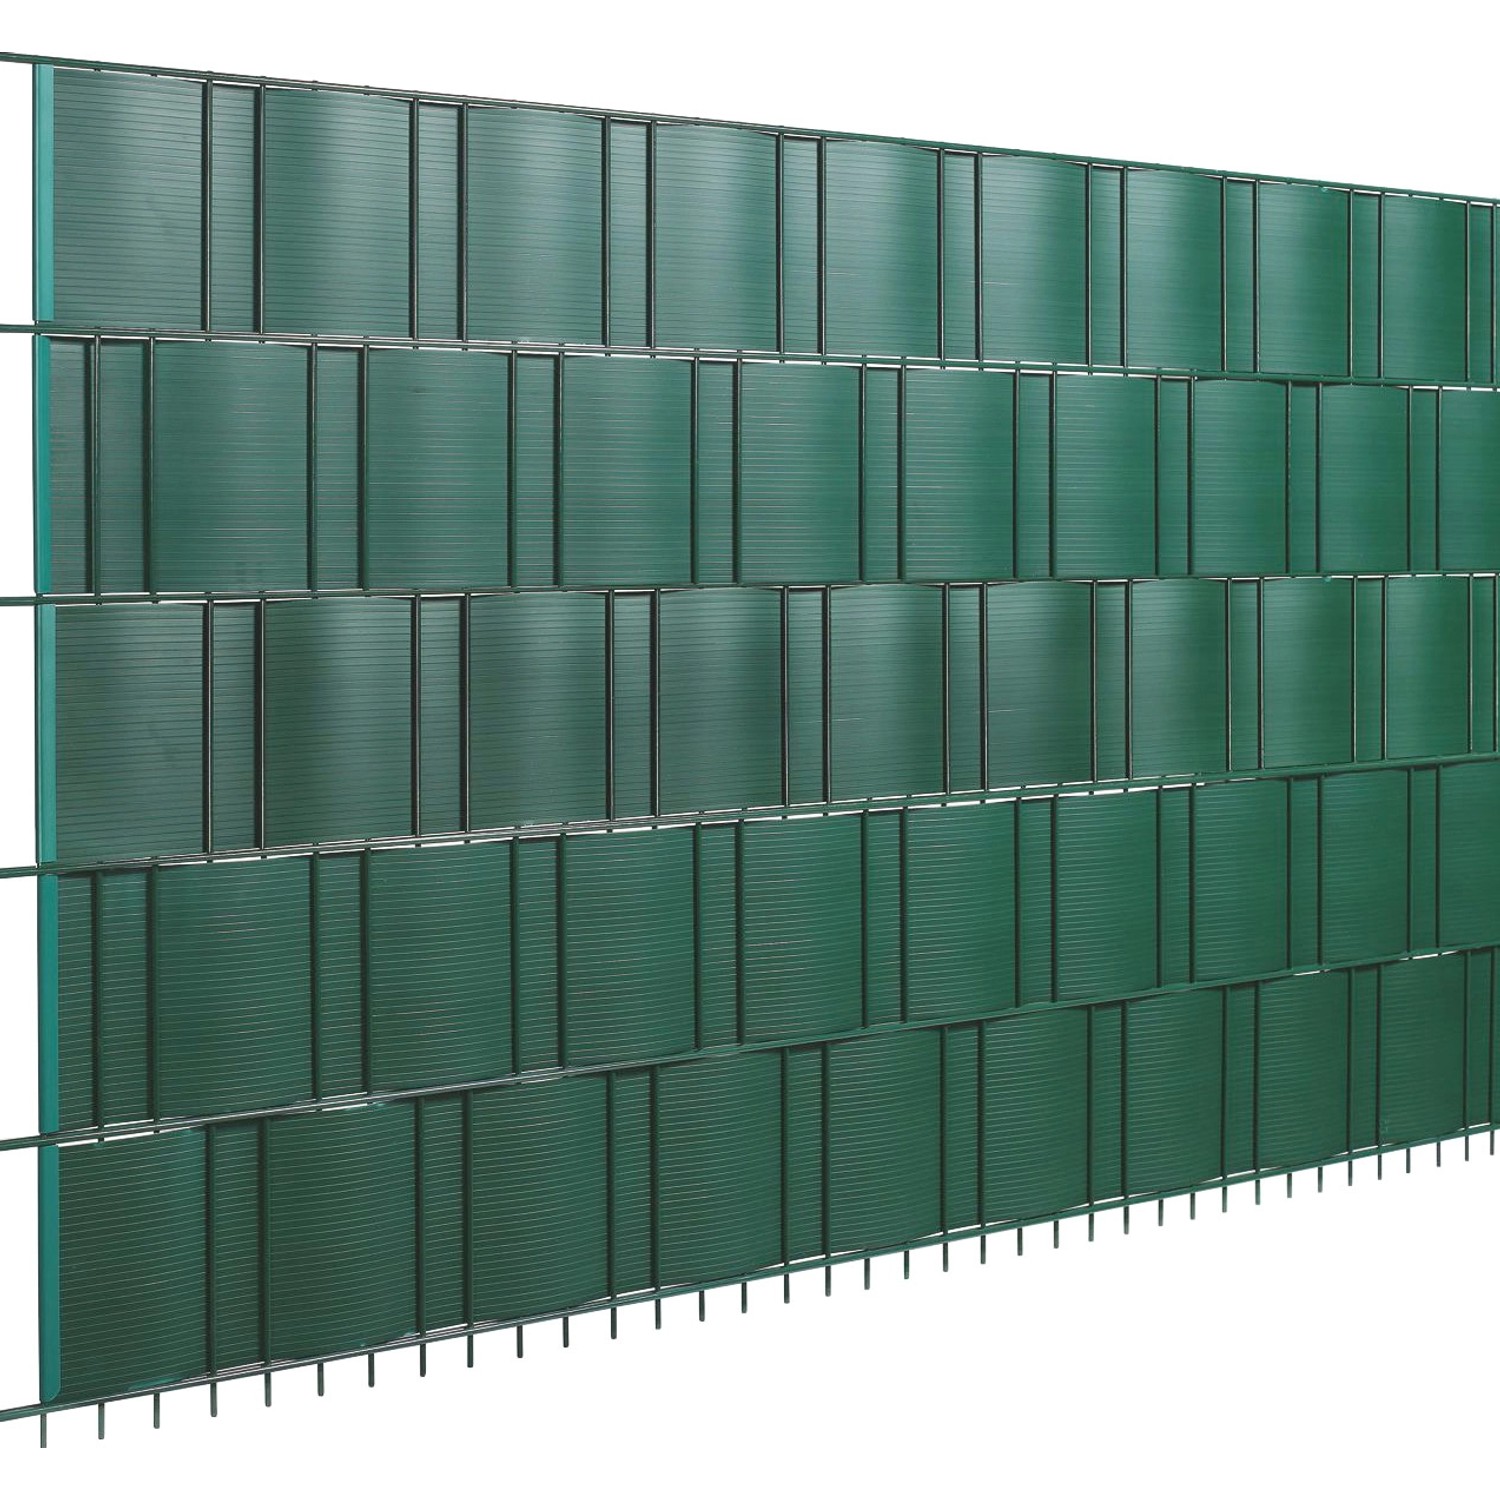 Floraworld PVC-Sichtschutzstreifen Grün Höhe 19 cm Länge 201,5 cm 5 Streifen